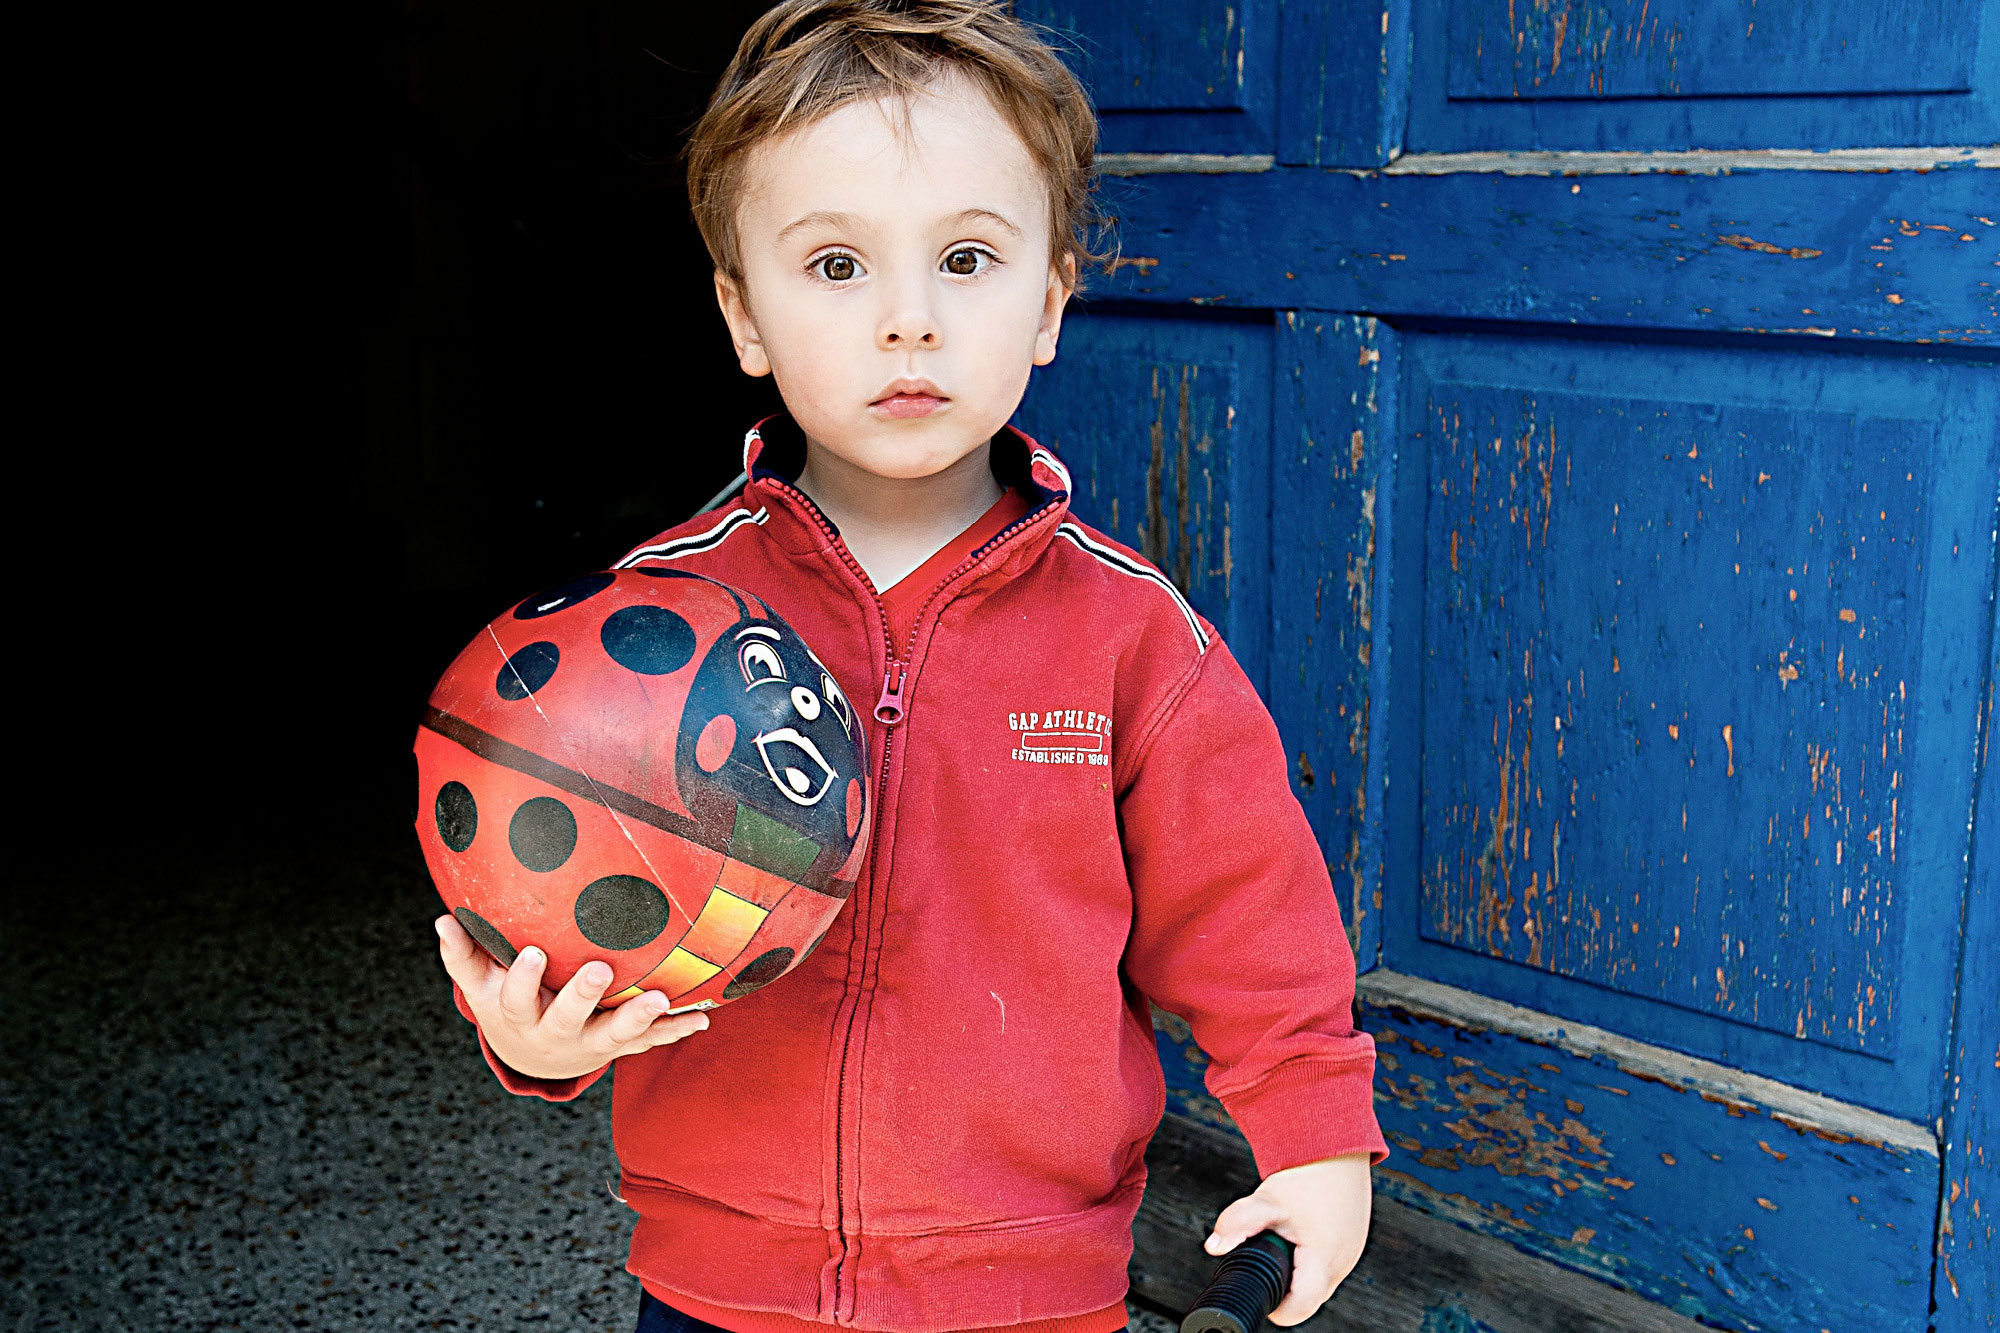 Fotografie eines kleinen Jungen mit Ball in der Hand